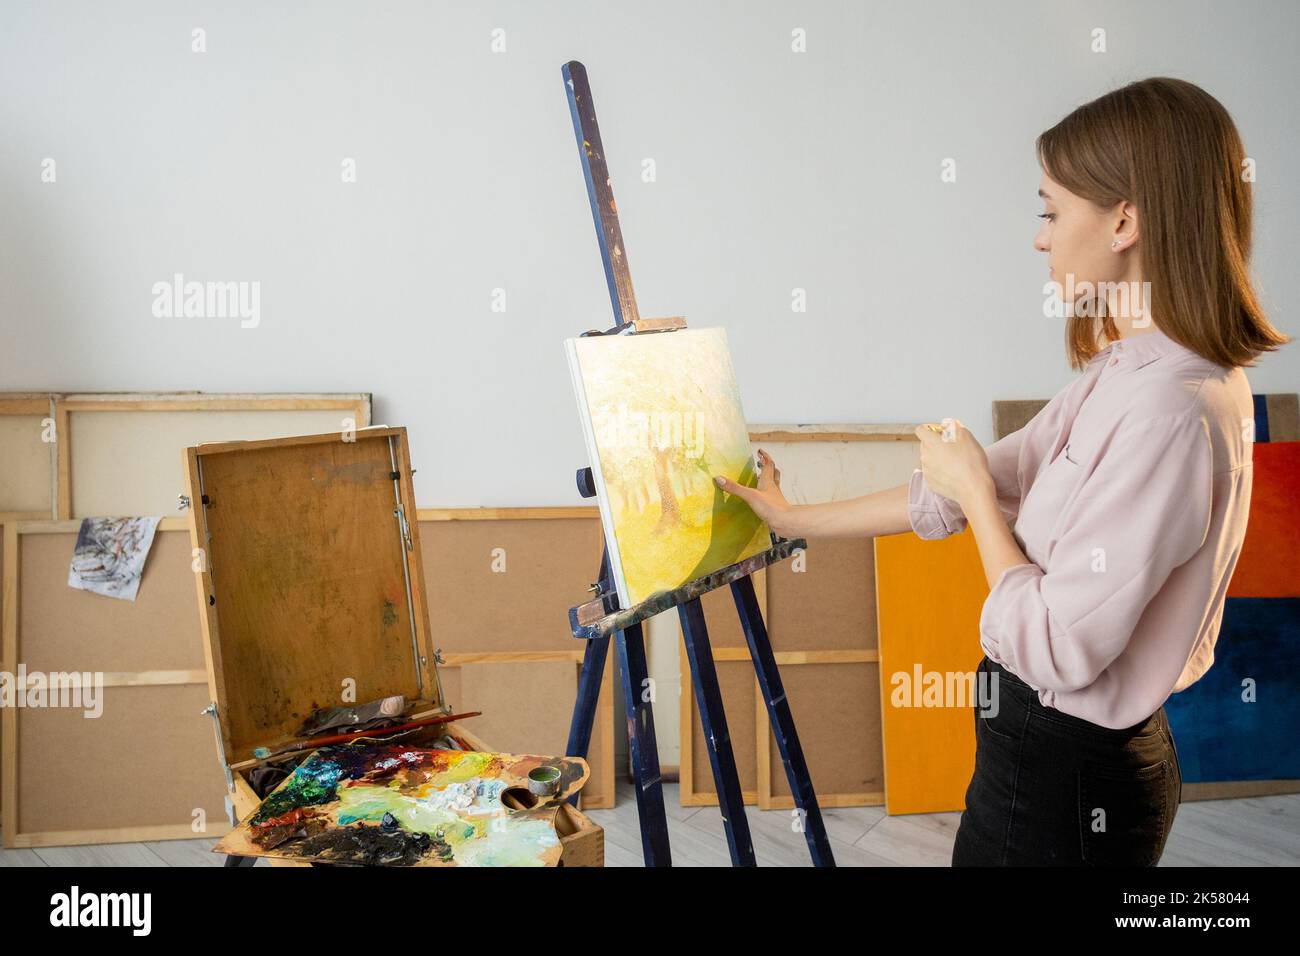 hand painting visual art artist working in studio Stock Photo